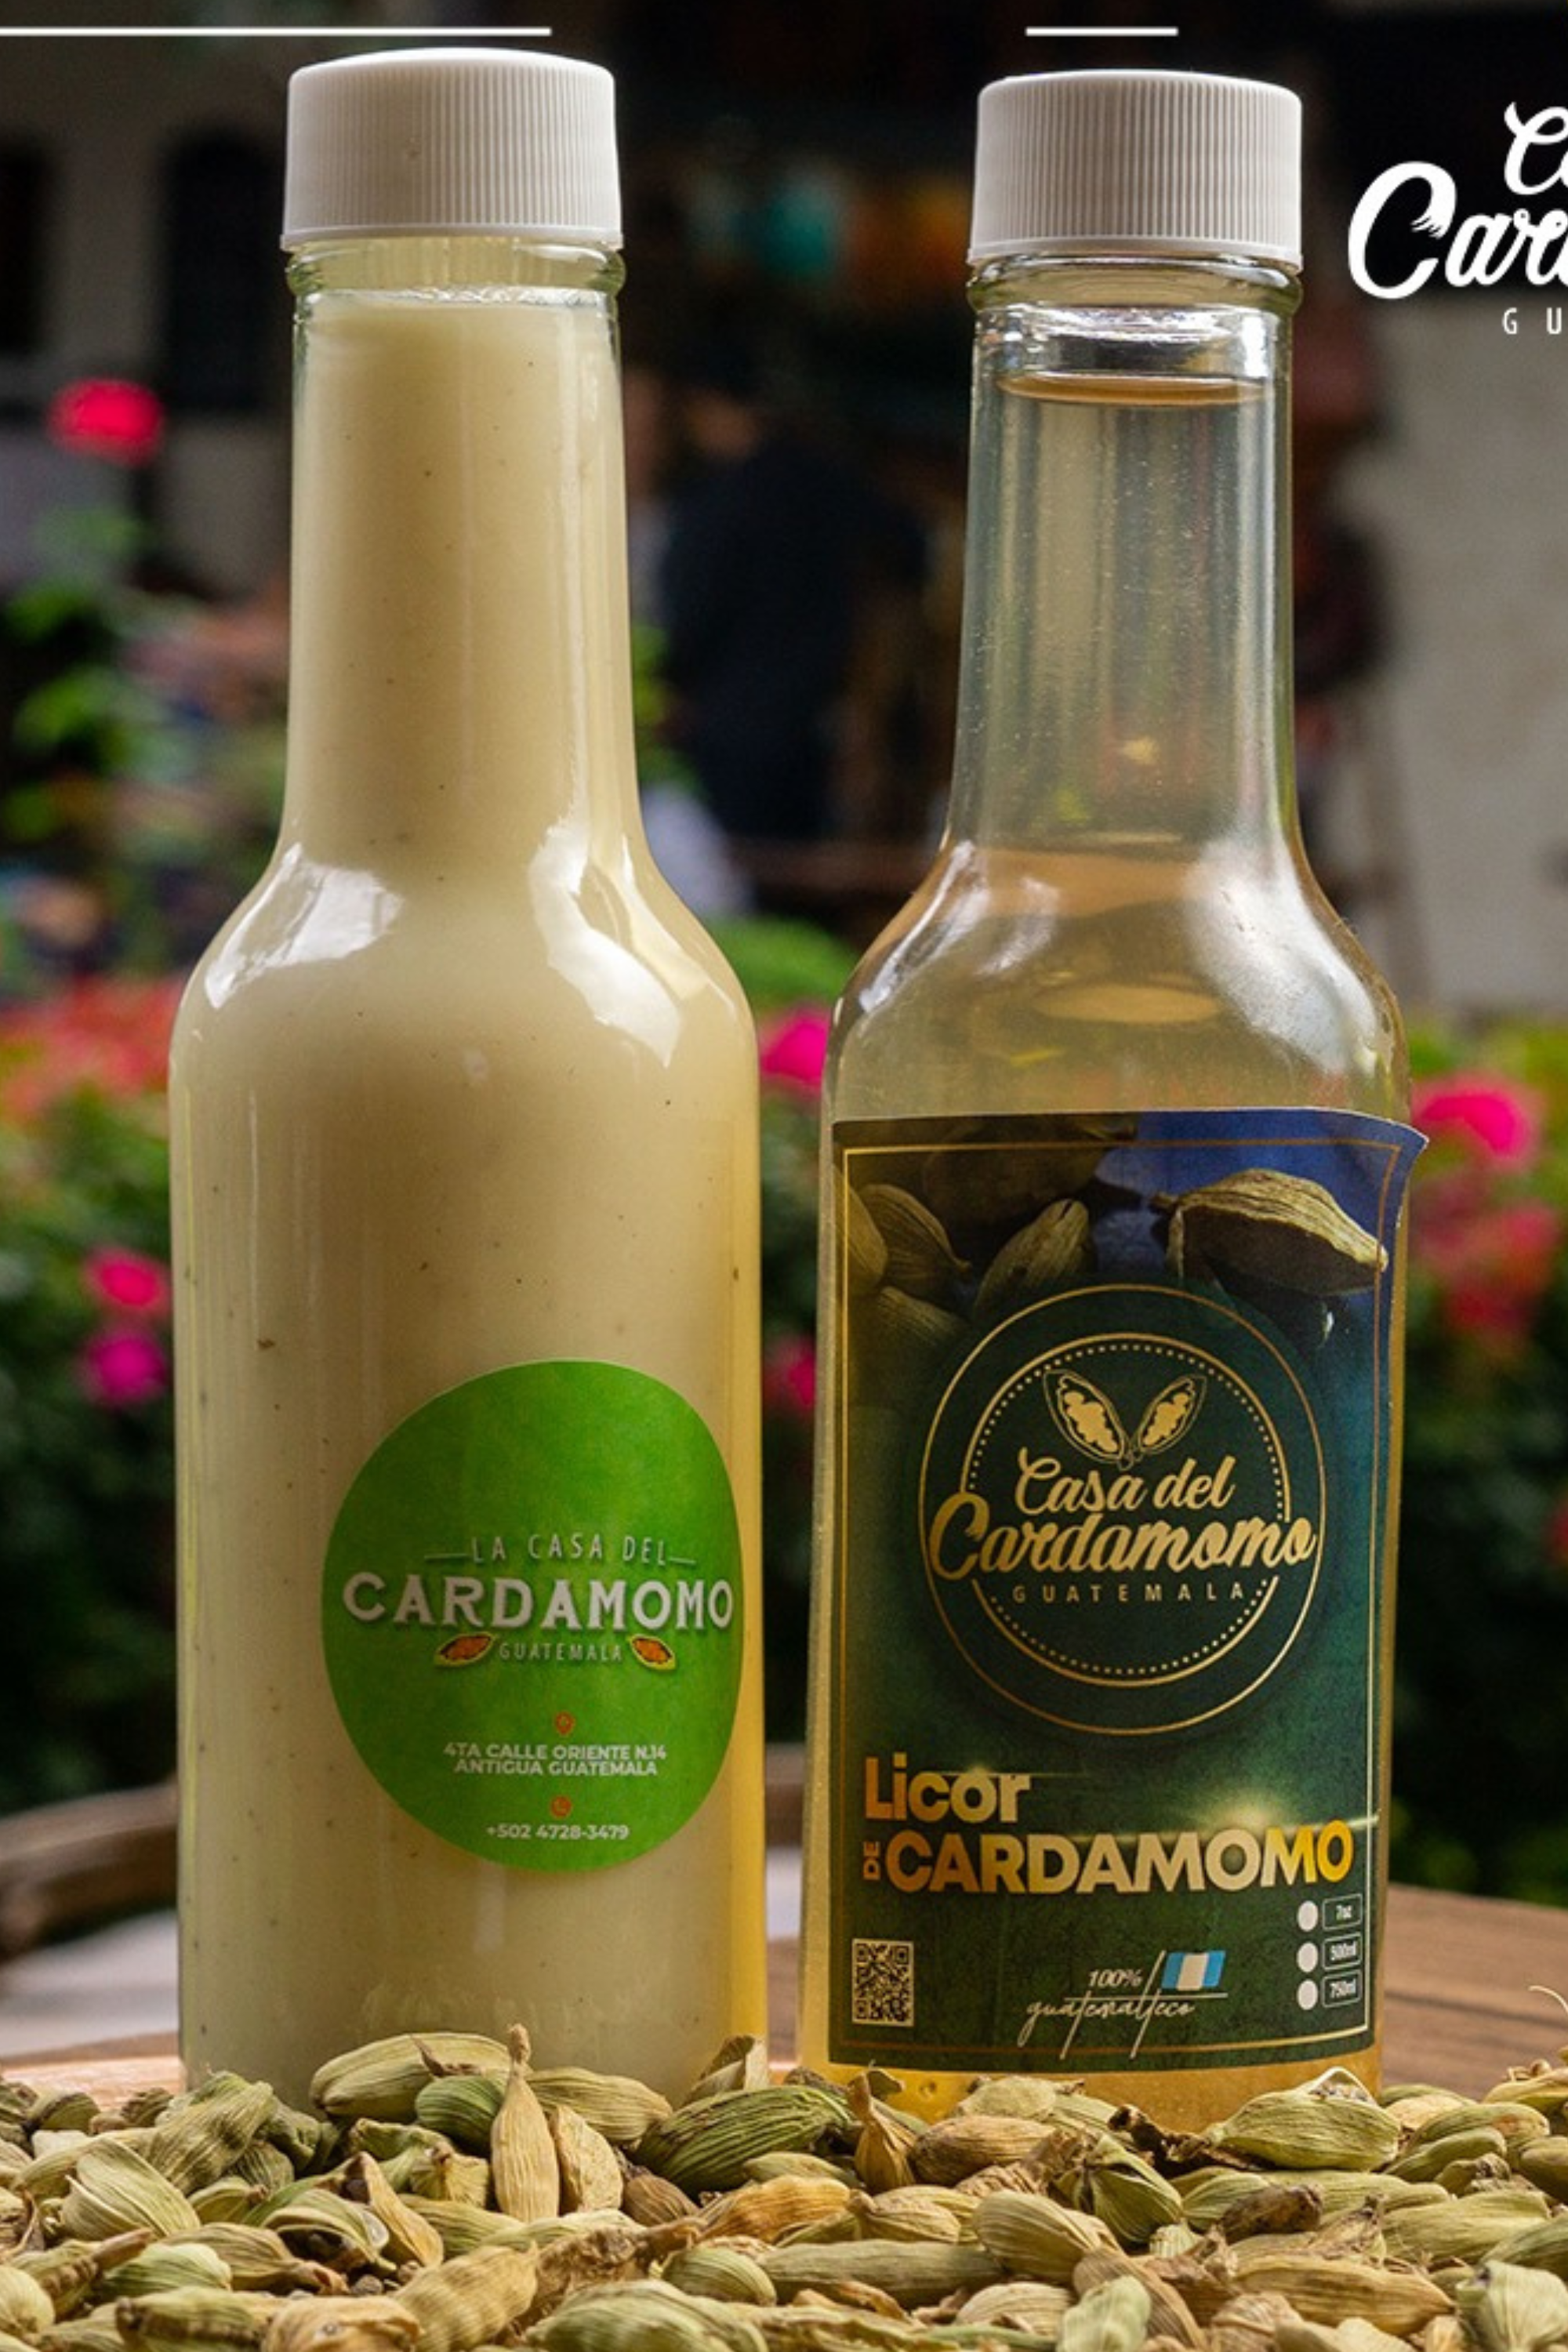 Cardamom Liquor